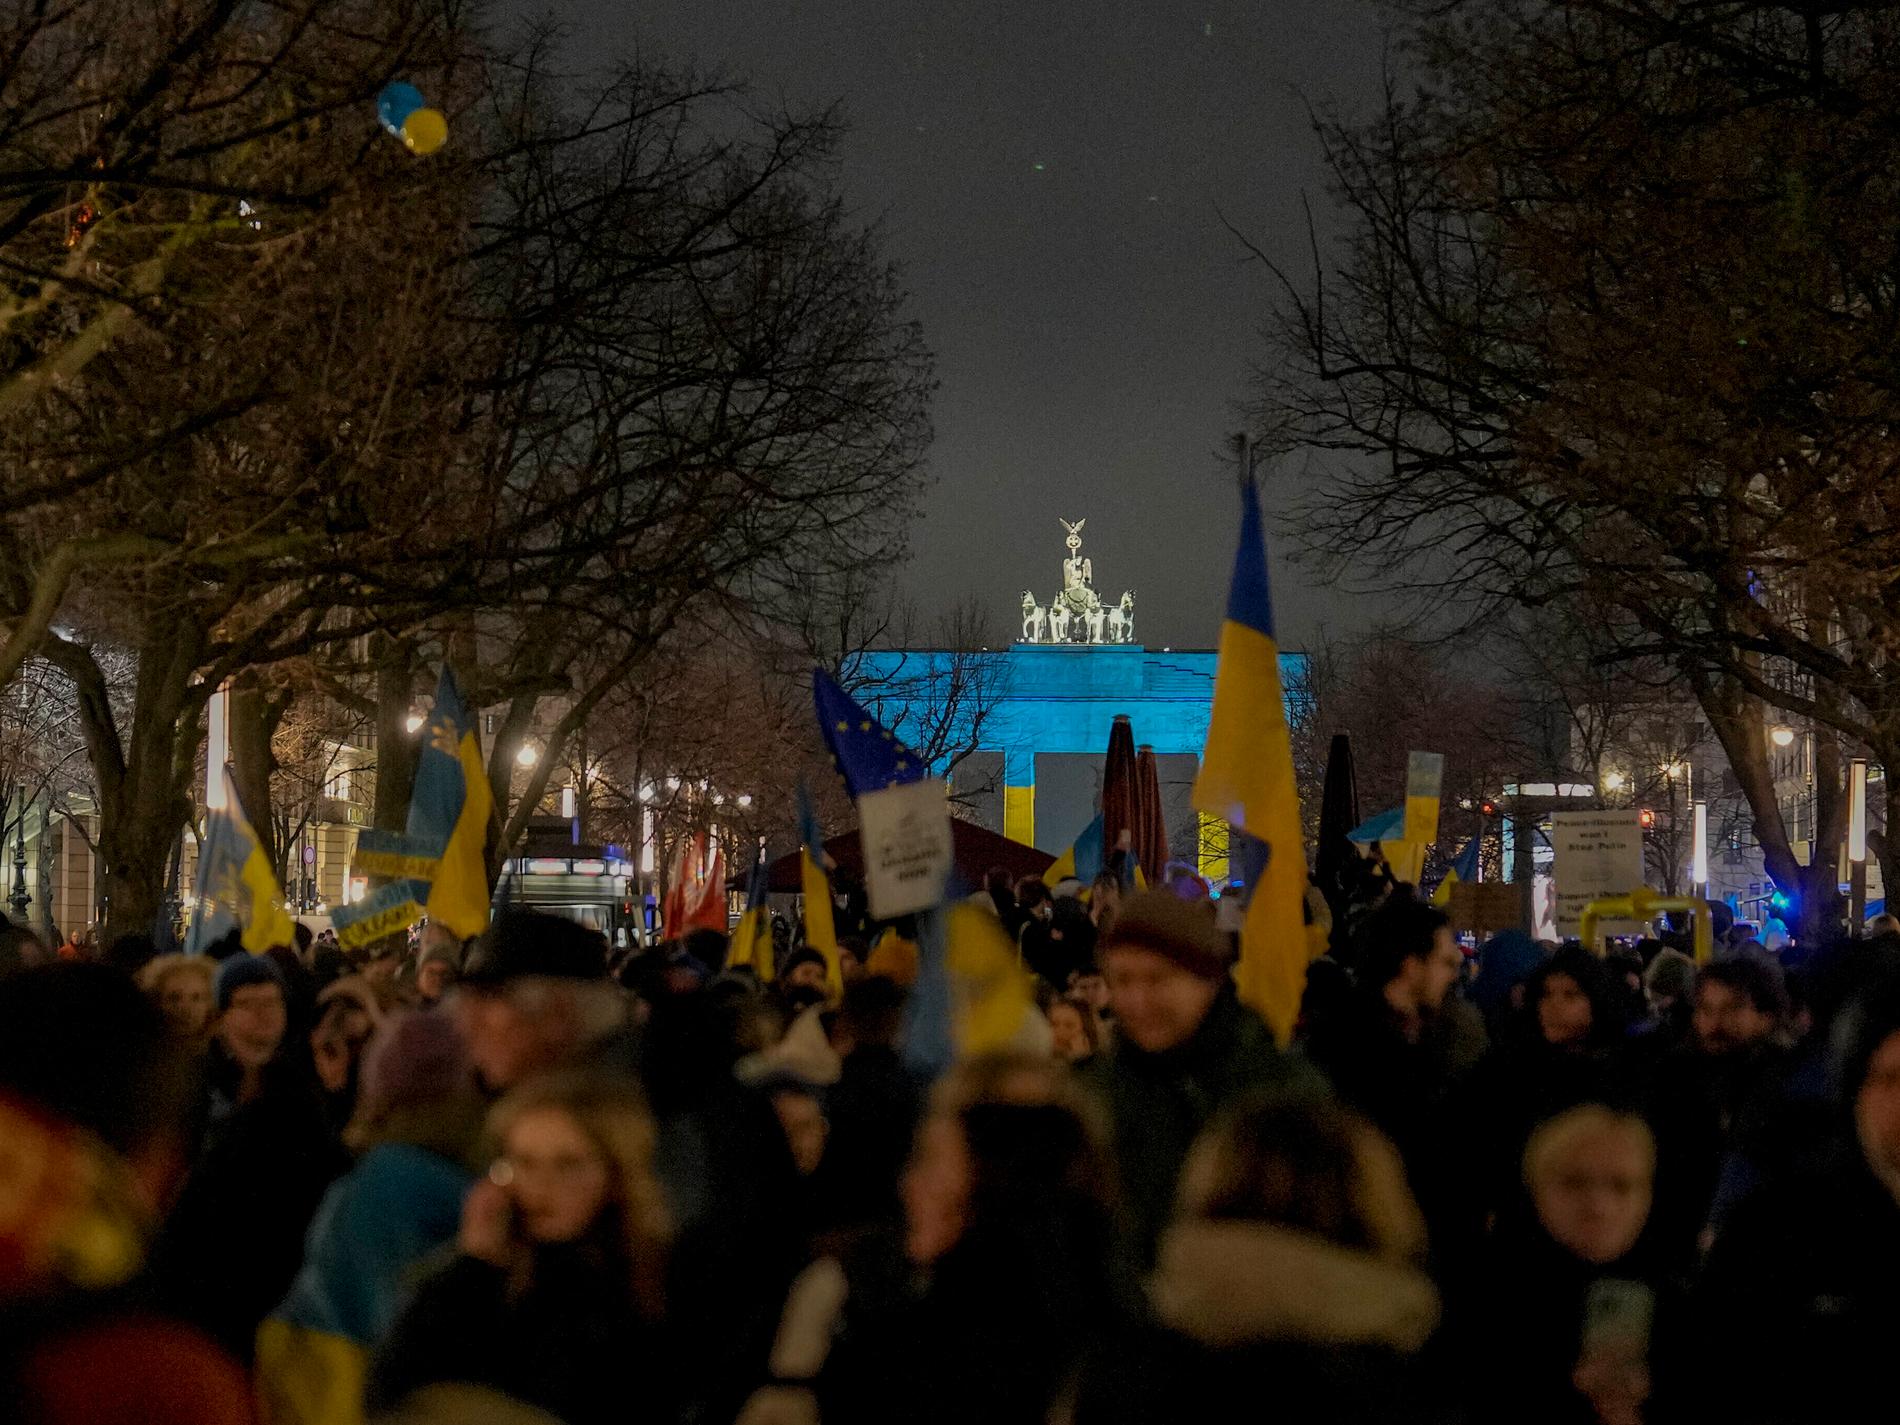 Berlinare demonstrerar för fredsförhandlingar